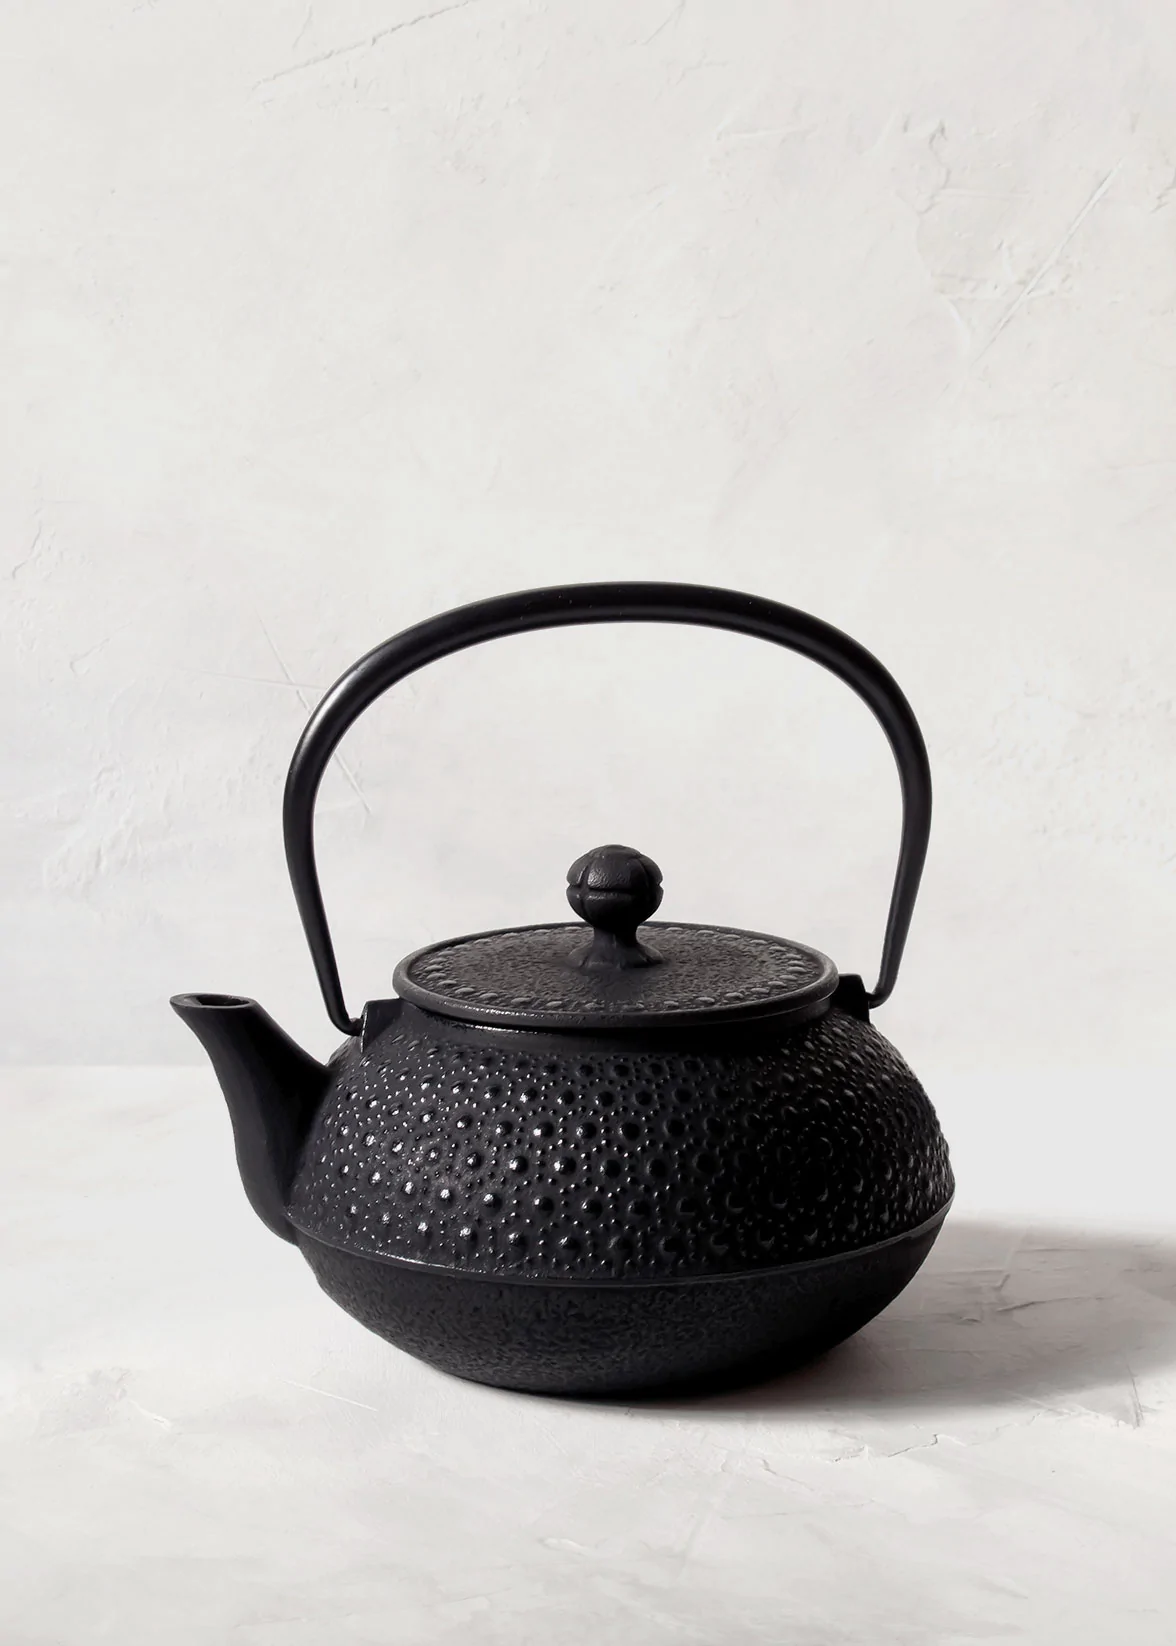 iwachu teapot achromatic  acquisition  usher  idea